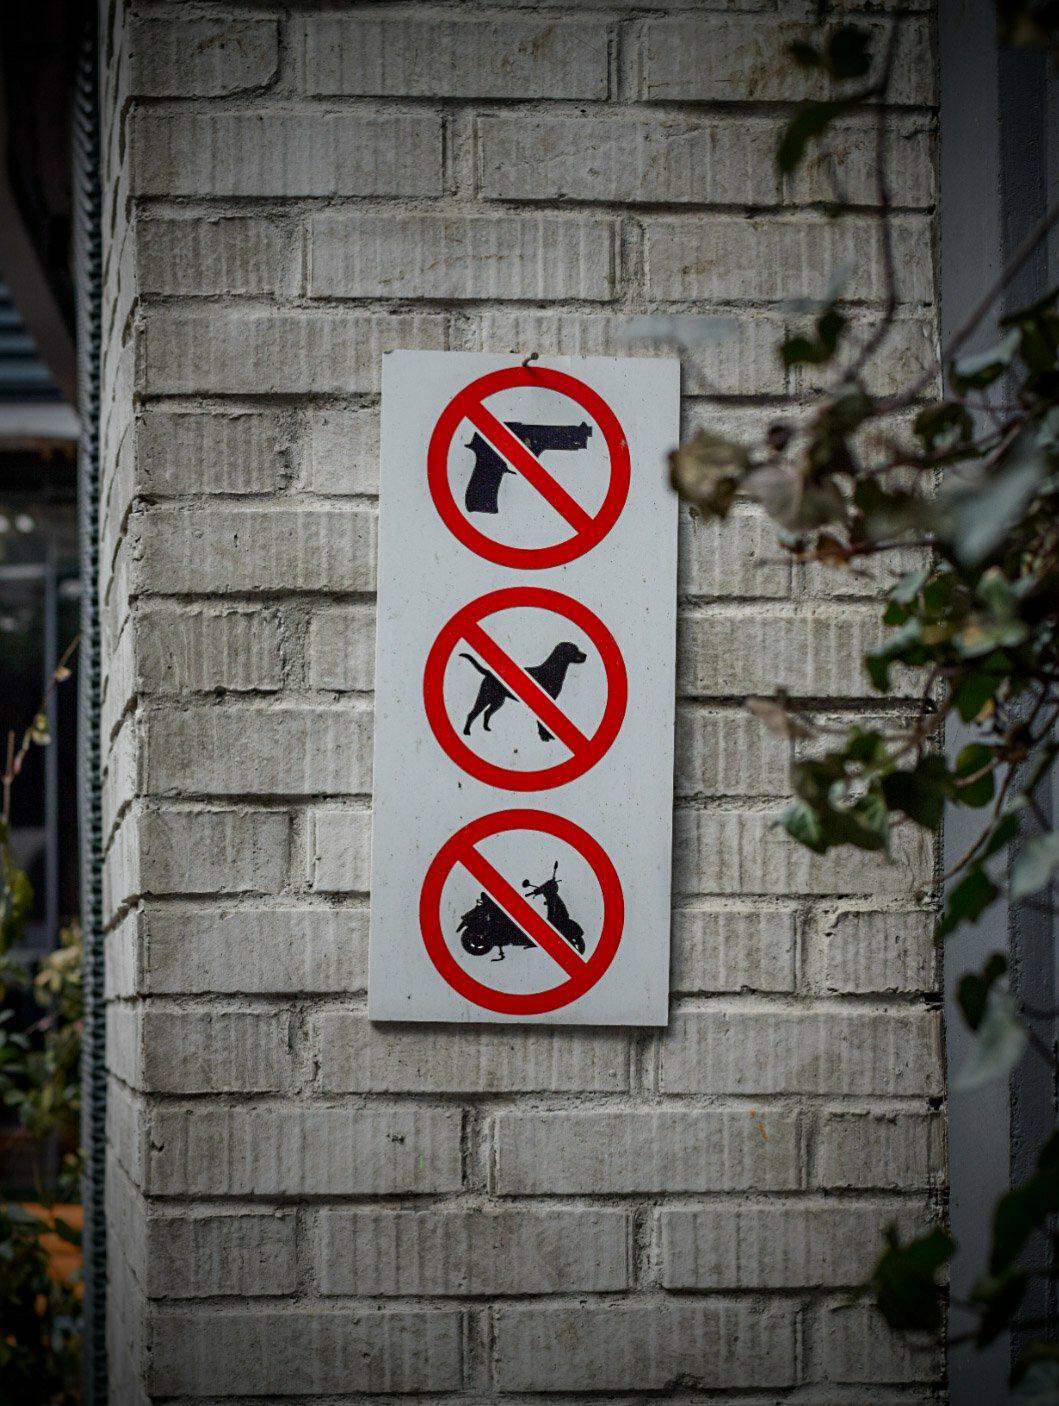 No gun, no dog, no scooter. - Sarajevo